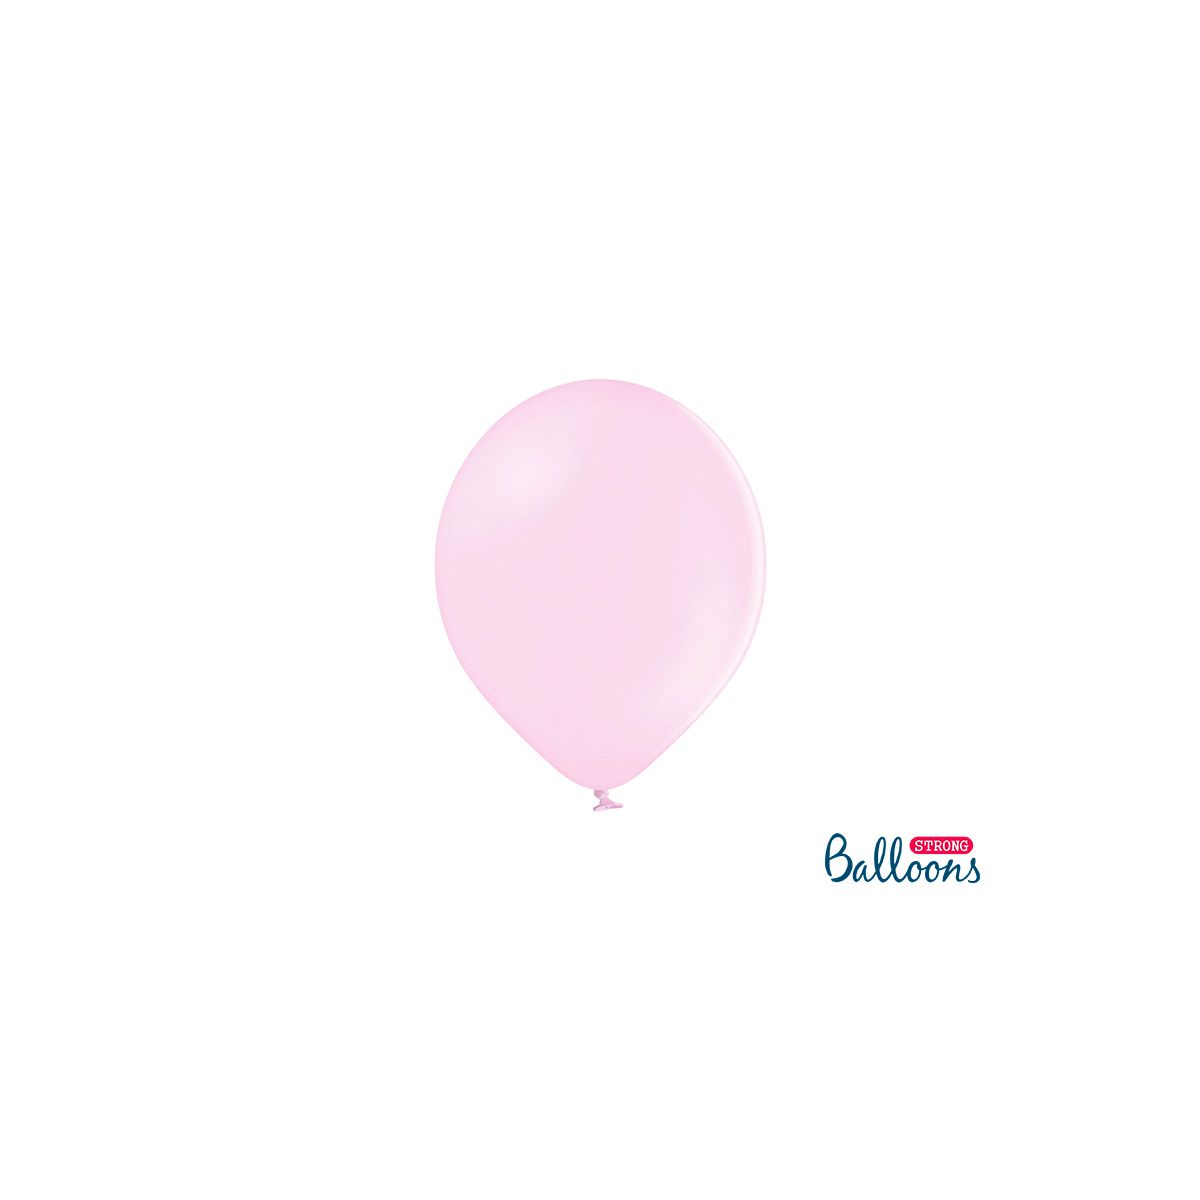 Balon gumowy Strong Baloons Pastel Pale Pink 1op/100sztuk pastelowy 100 szt różowy pastelowy 270mm (SB12P-081B)